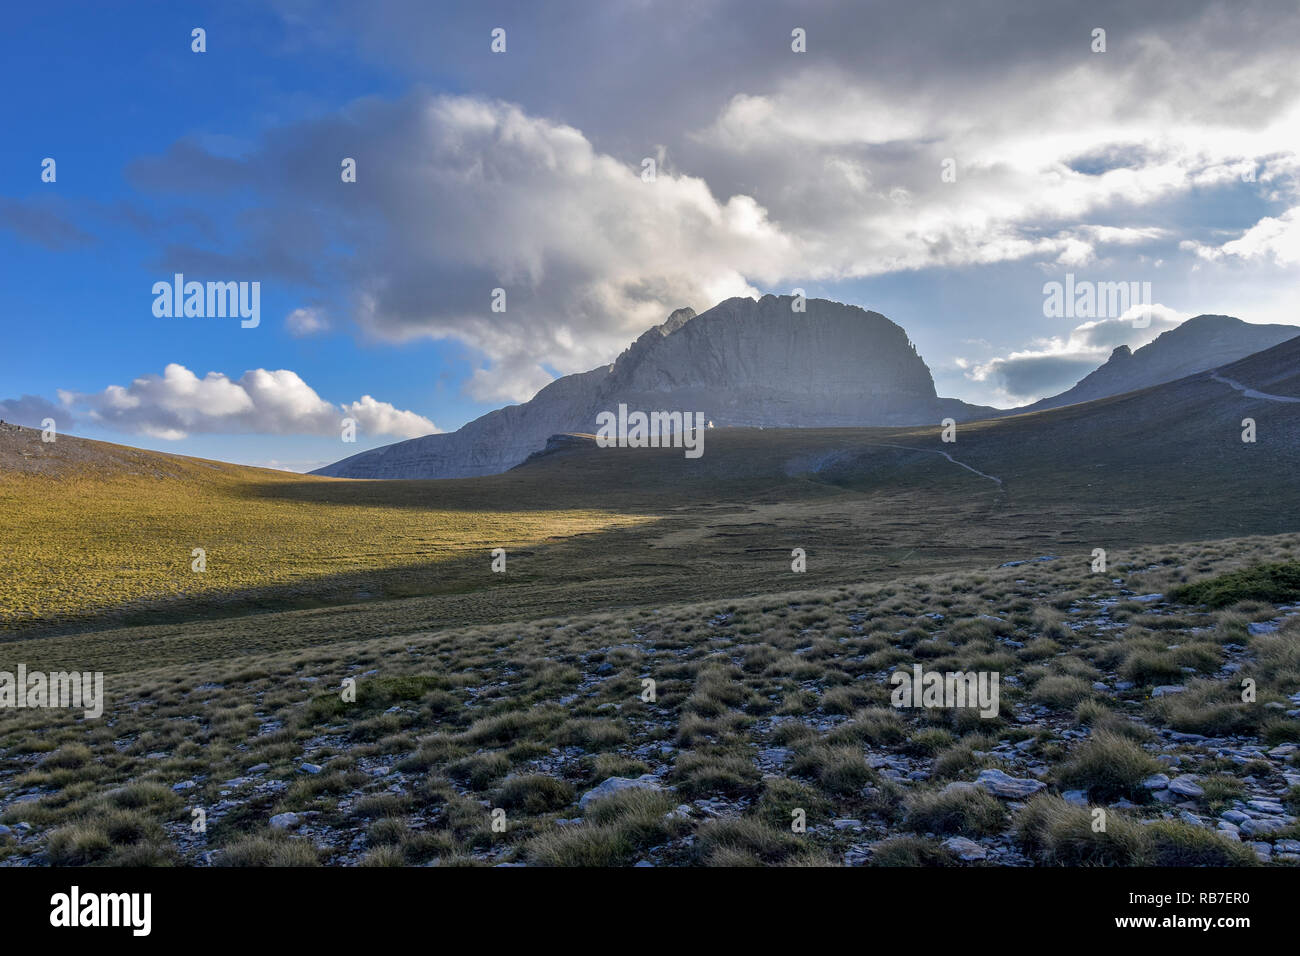 Landschaft von Berg Olymp, Griechenland Stockfotografie - Alamy